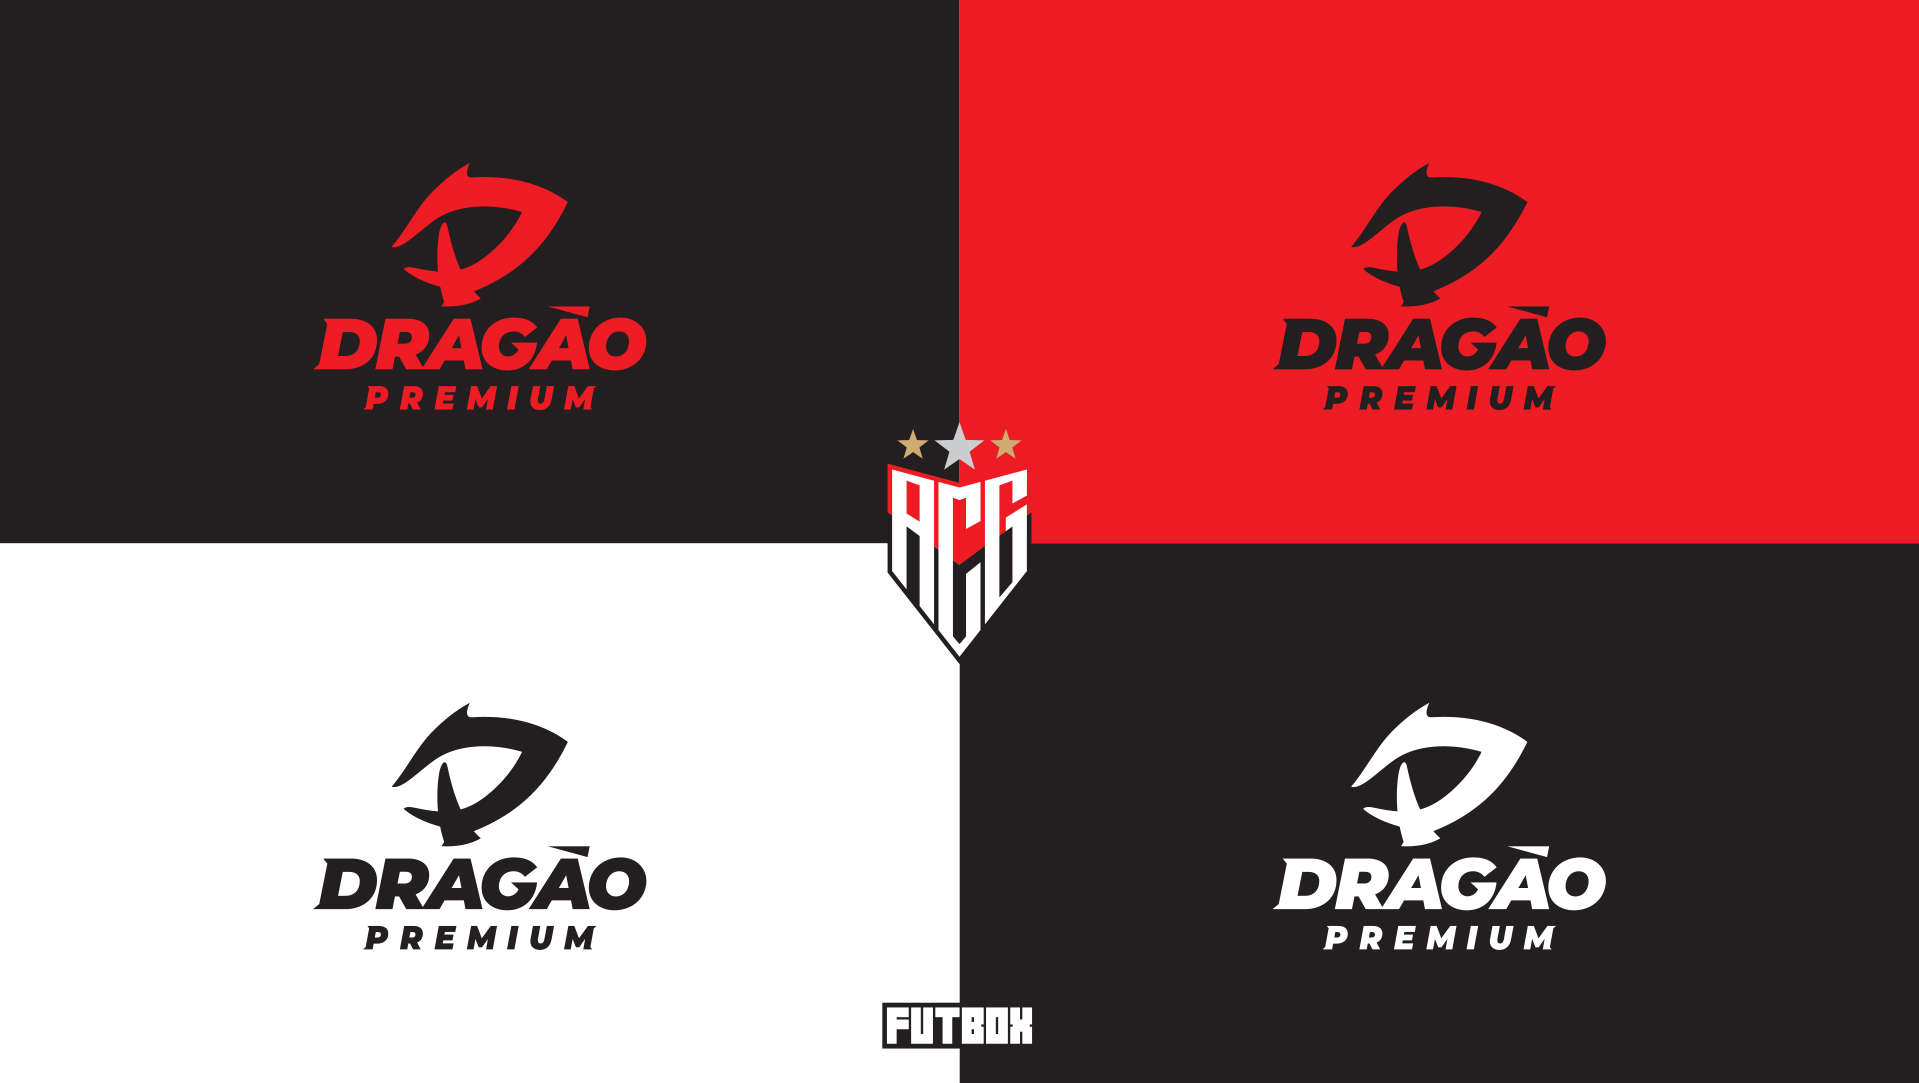 Nova assinatura "Dragão Premium"